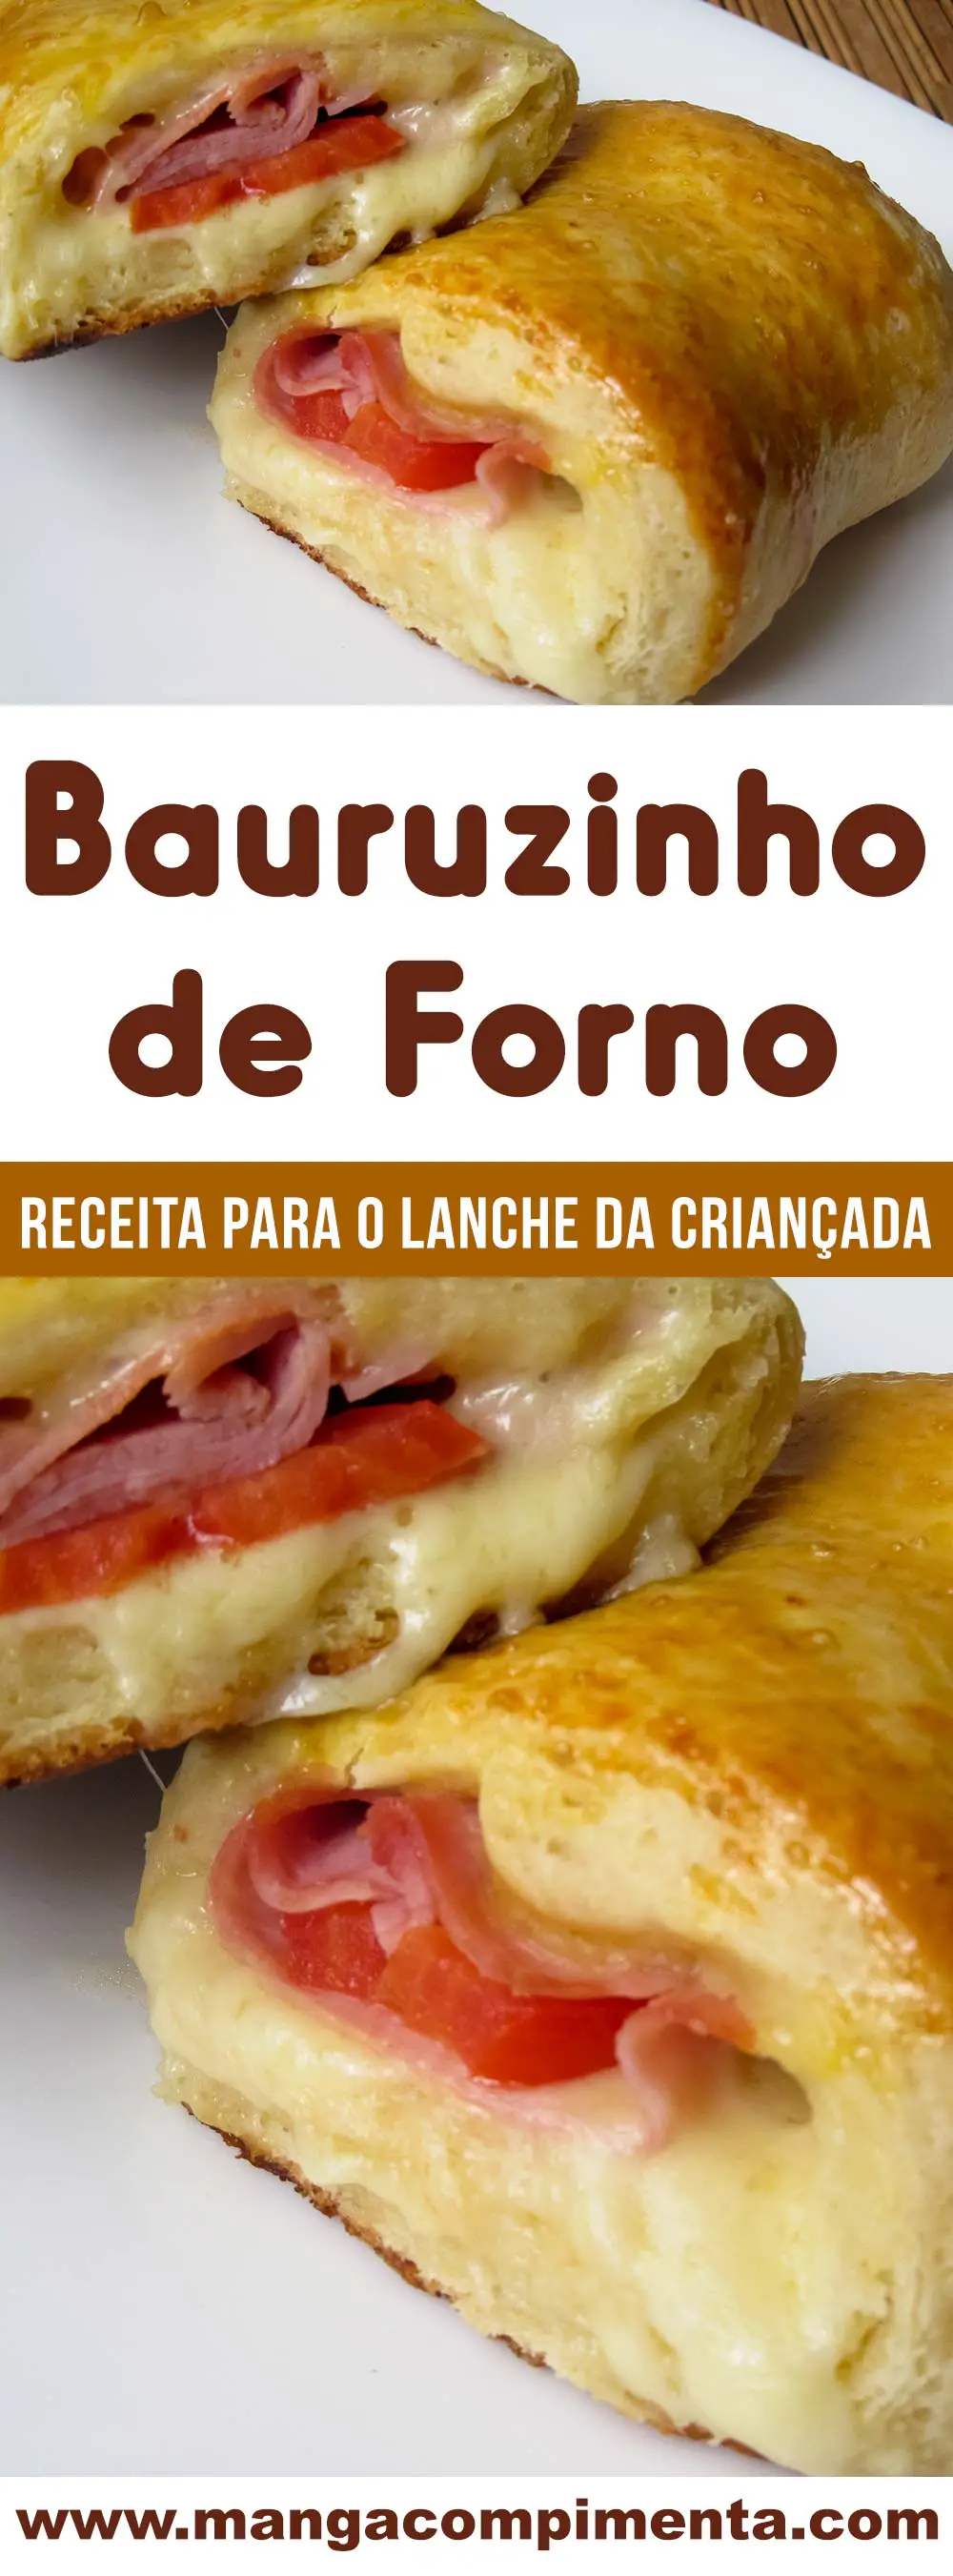 Bauruzinho de Forno - um lanche delicioso para o fim de tarde com toda a família.